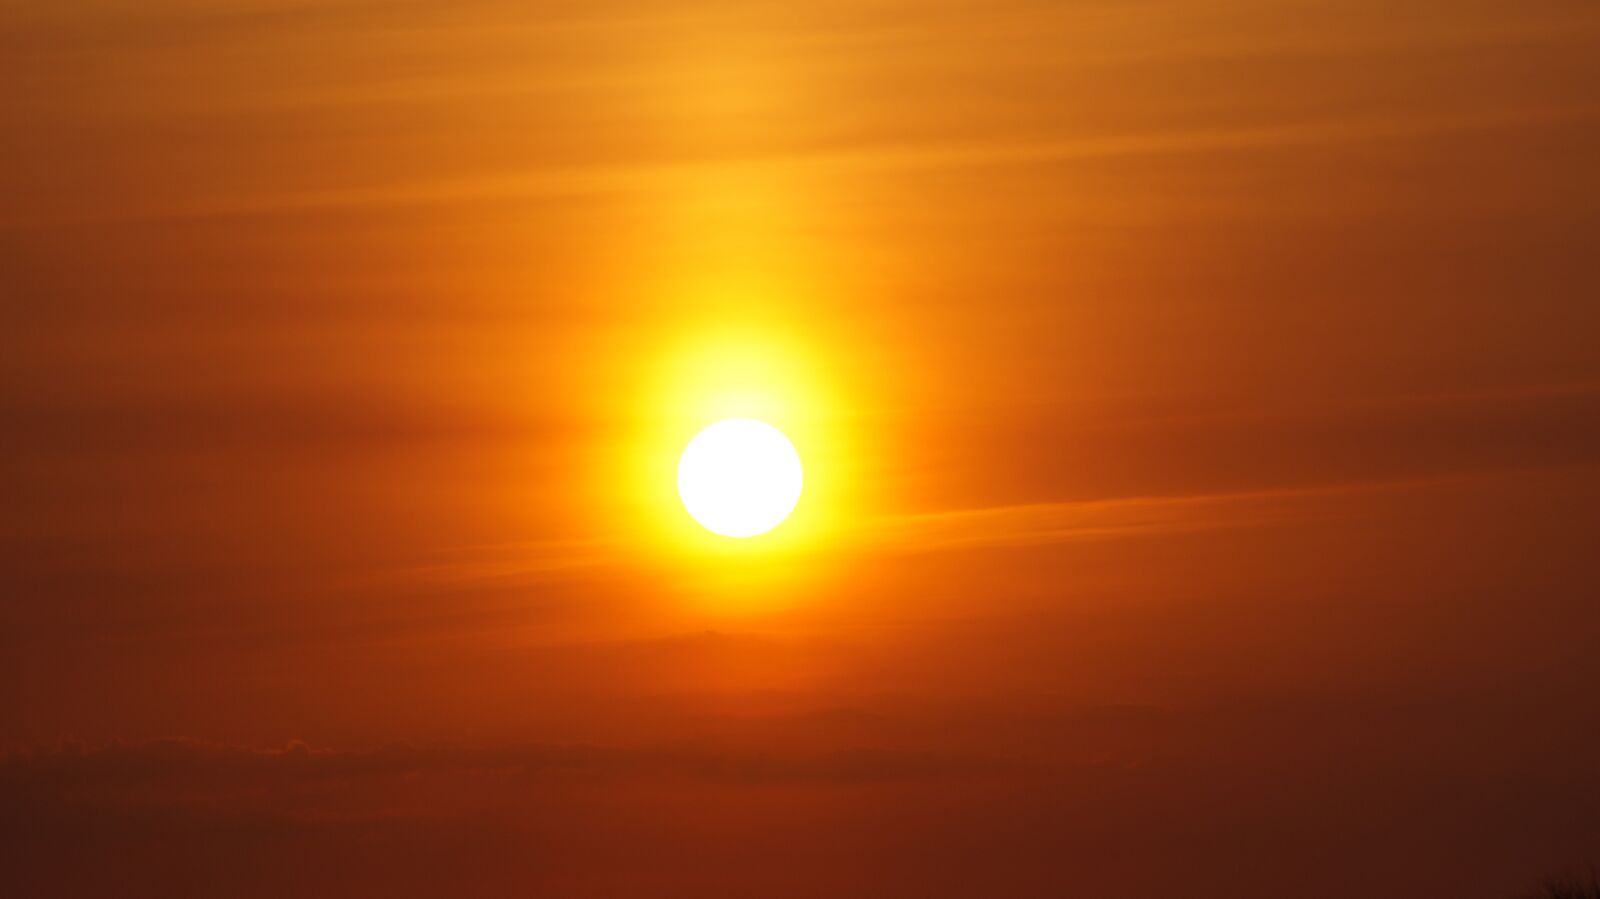 Sony SLT-A58 + Sony DT 55-200mm F4-5.6 SAM sample photo. Sun, sunset, twilight photography